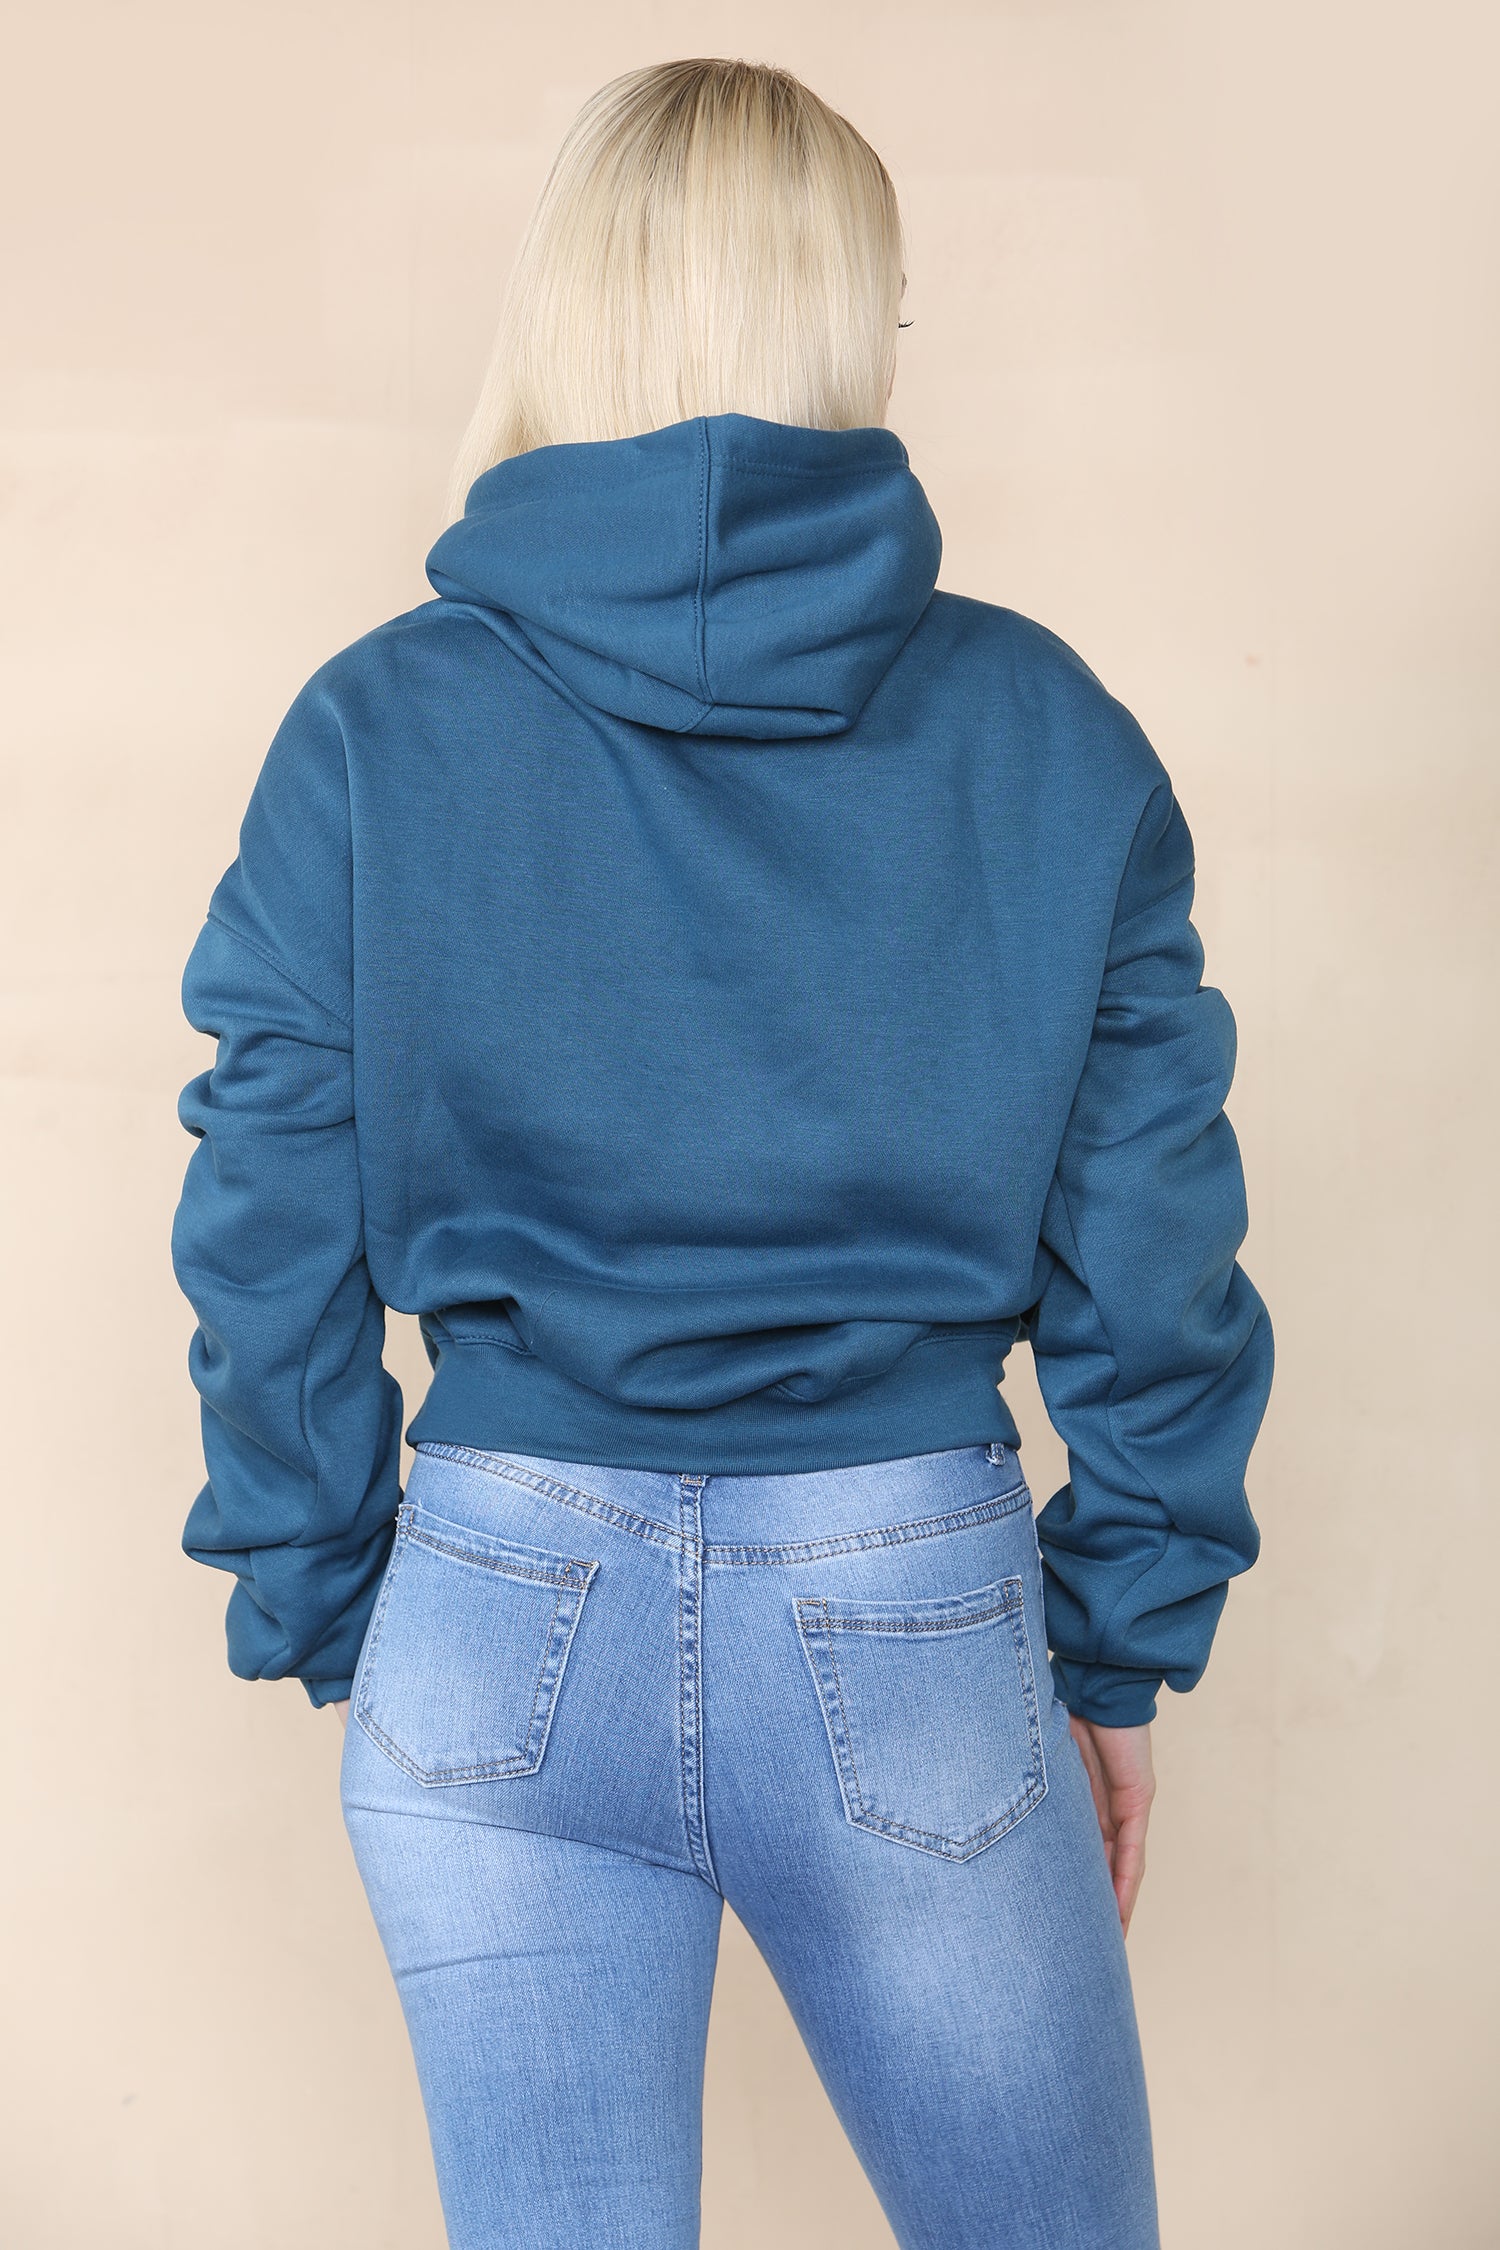 Teal Blue Ruched Sleeve Hooded Sweatshirt - Kora - Storm Desire